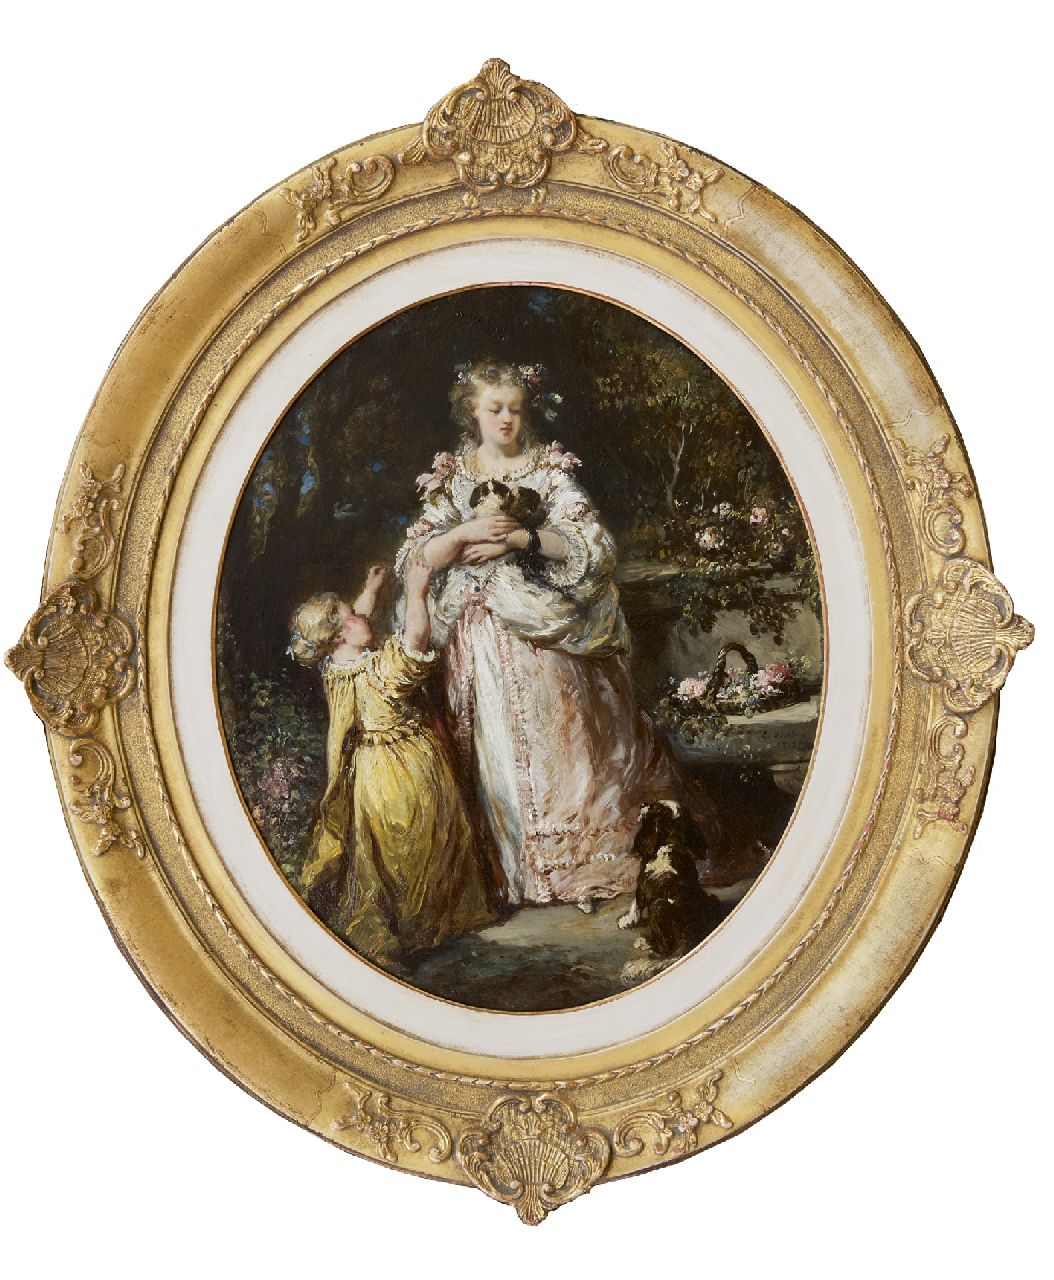 Isabey L.G.E.  | Louis Gabriel 'Eugène' Isabey | Schilderijen te koop aangeboden | Het nieuwe nestje, olieverf op doek 47,3 x 39,2 cm, gesigneerd rechtsonder en gedateerd 1852